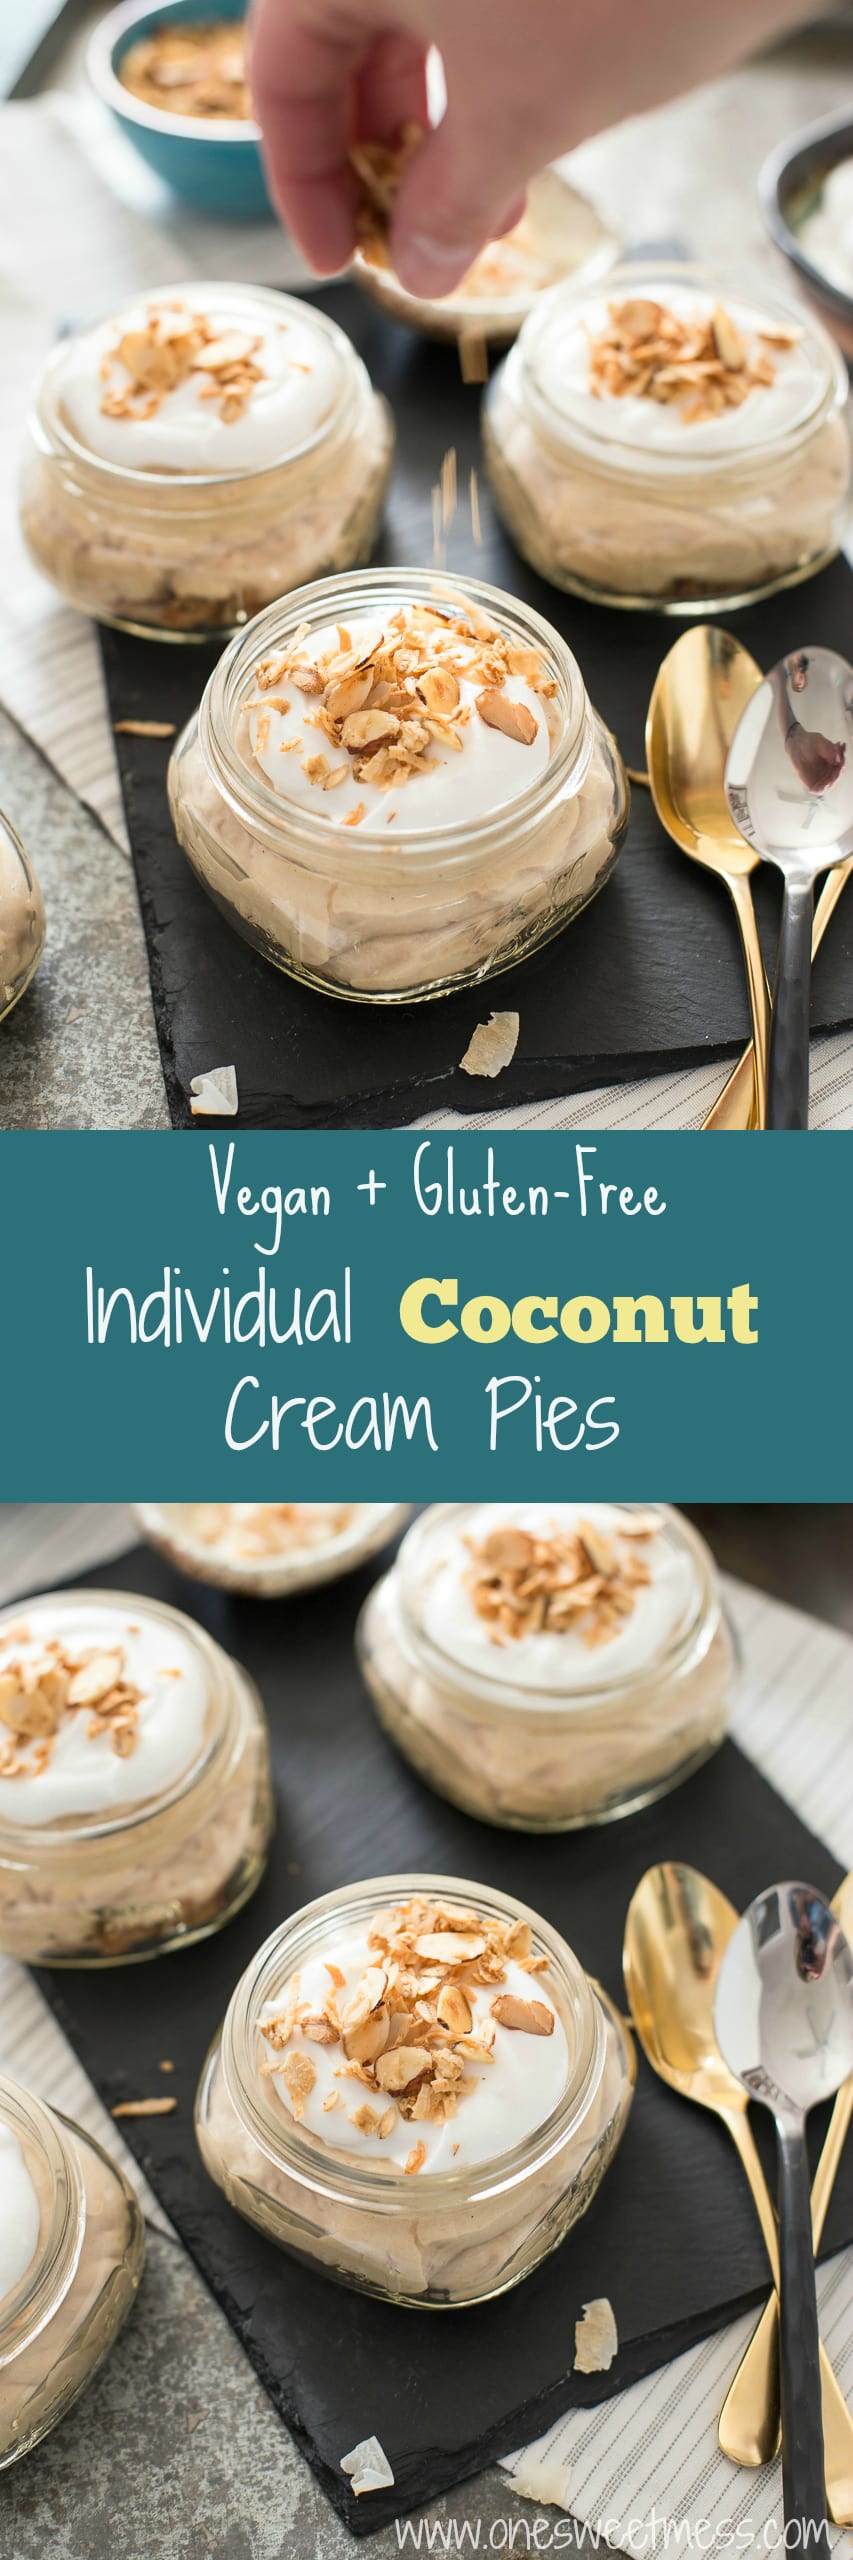 Individual Coconut Cream Pies {Vegan + Gluten-Free}